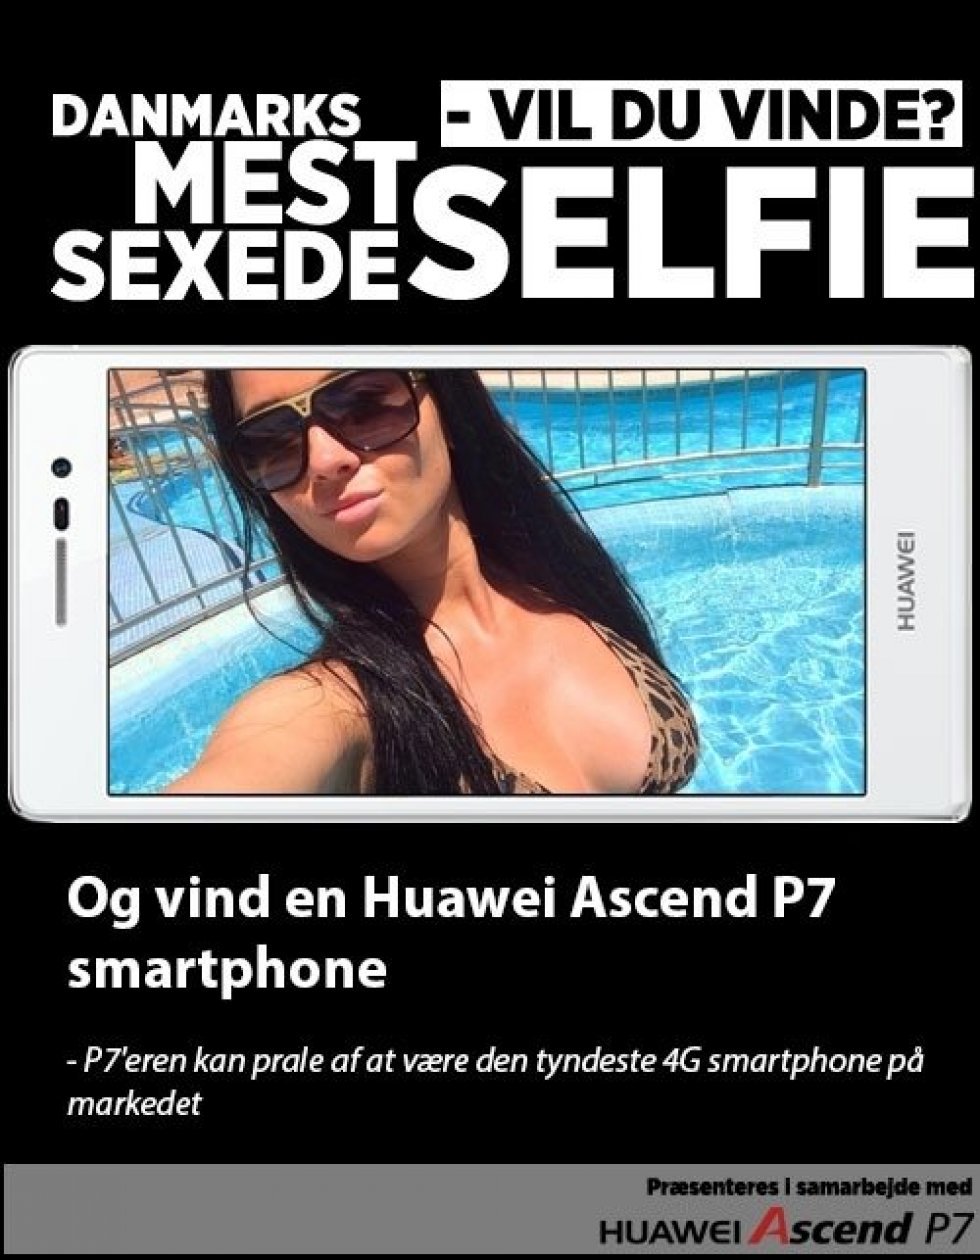 Irina Babenko demonstrerer her et sexet selfie! - Danmarks mest sexede selfie [Konkurrence]